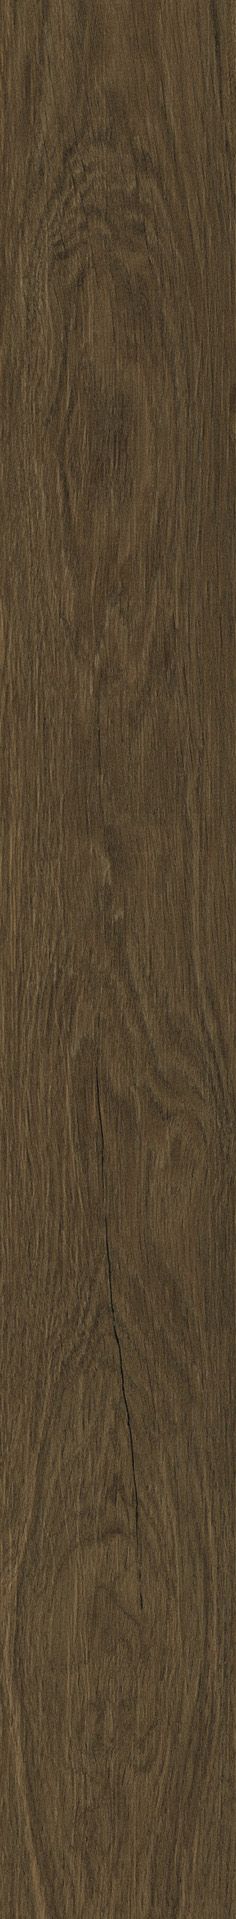 Плитка из керамогранита матовая Italon Лофт 20x160 коричневый (610010001641) плитка из керамогранита матовая italon лофт 20x80 коричневый 610110000451